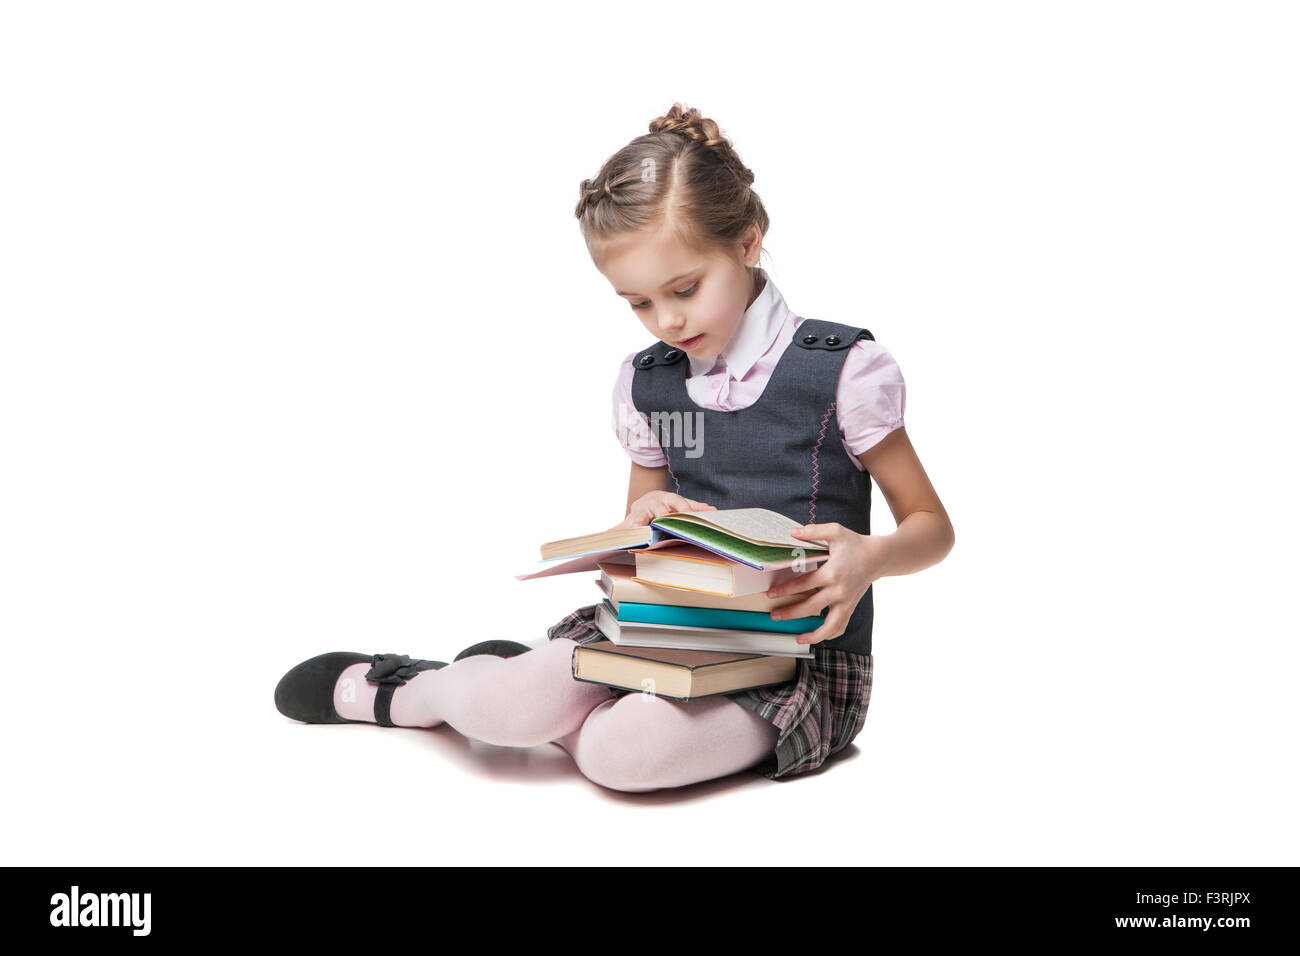 Wunderschönes kleines Mädchen in Schuluniform mit Büchern auf dem Boden sitzend Stockfoto